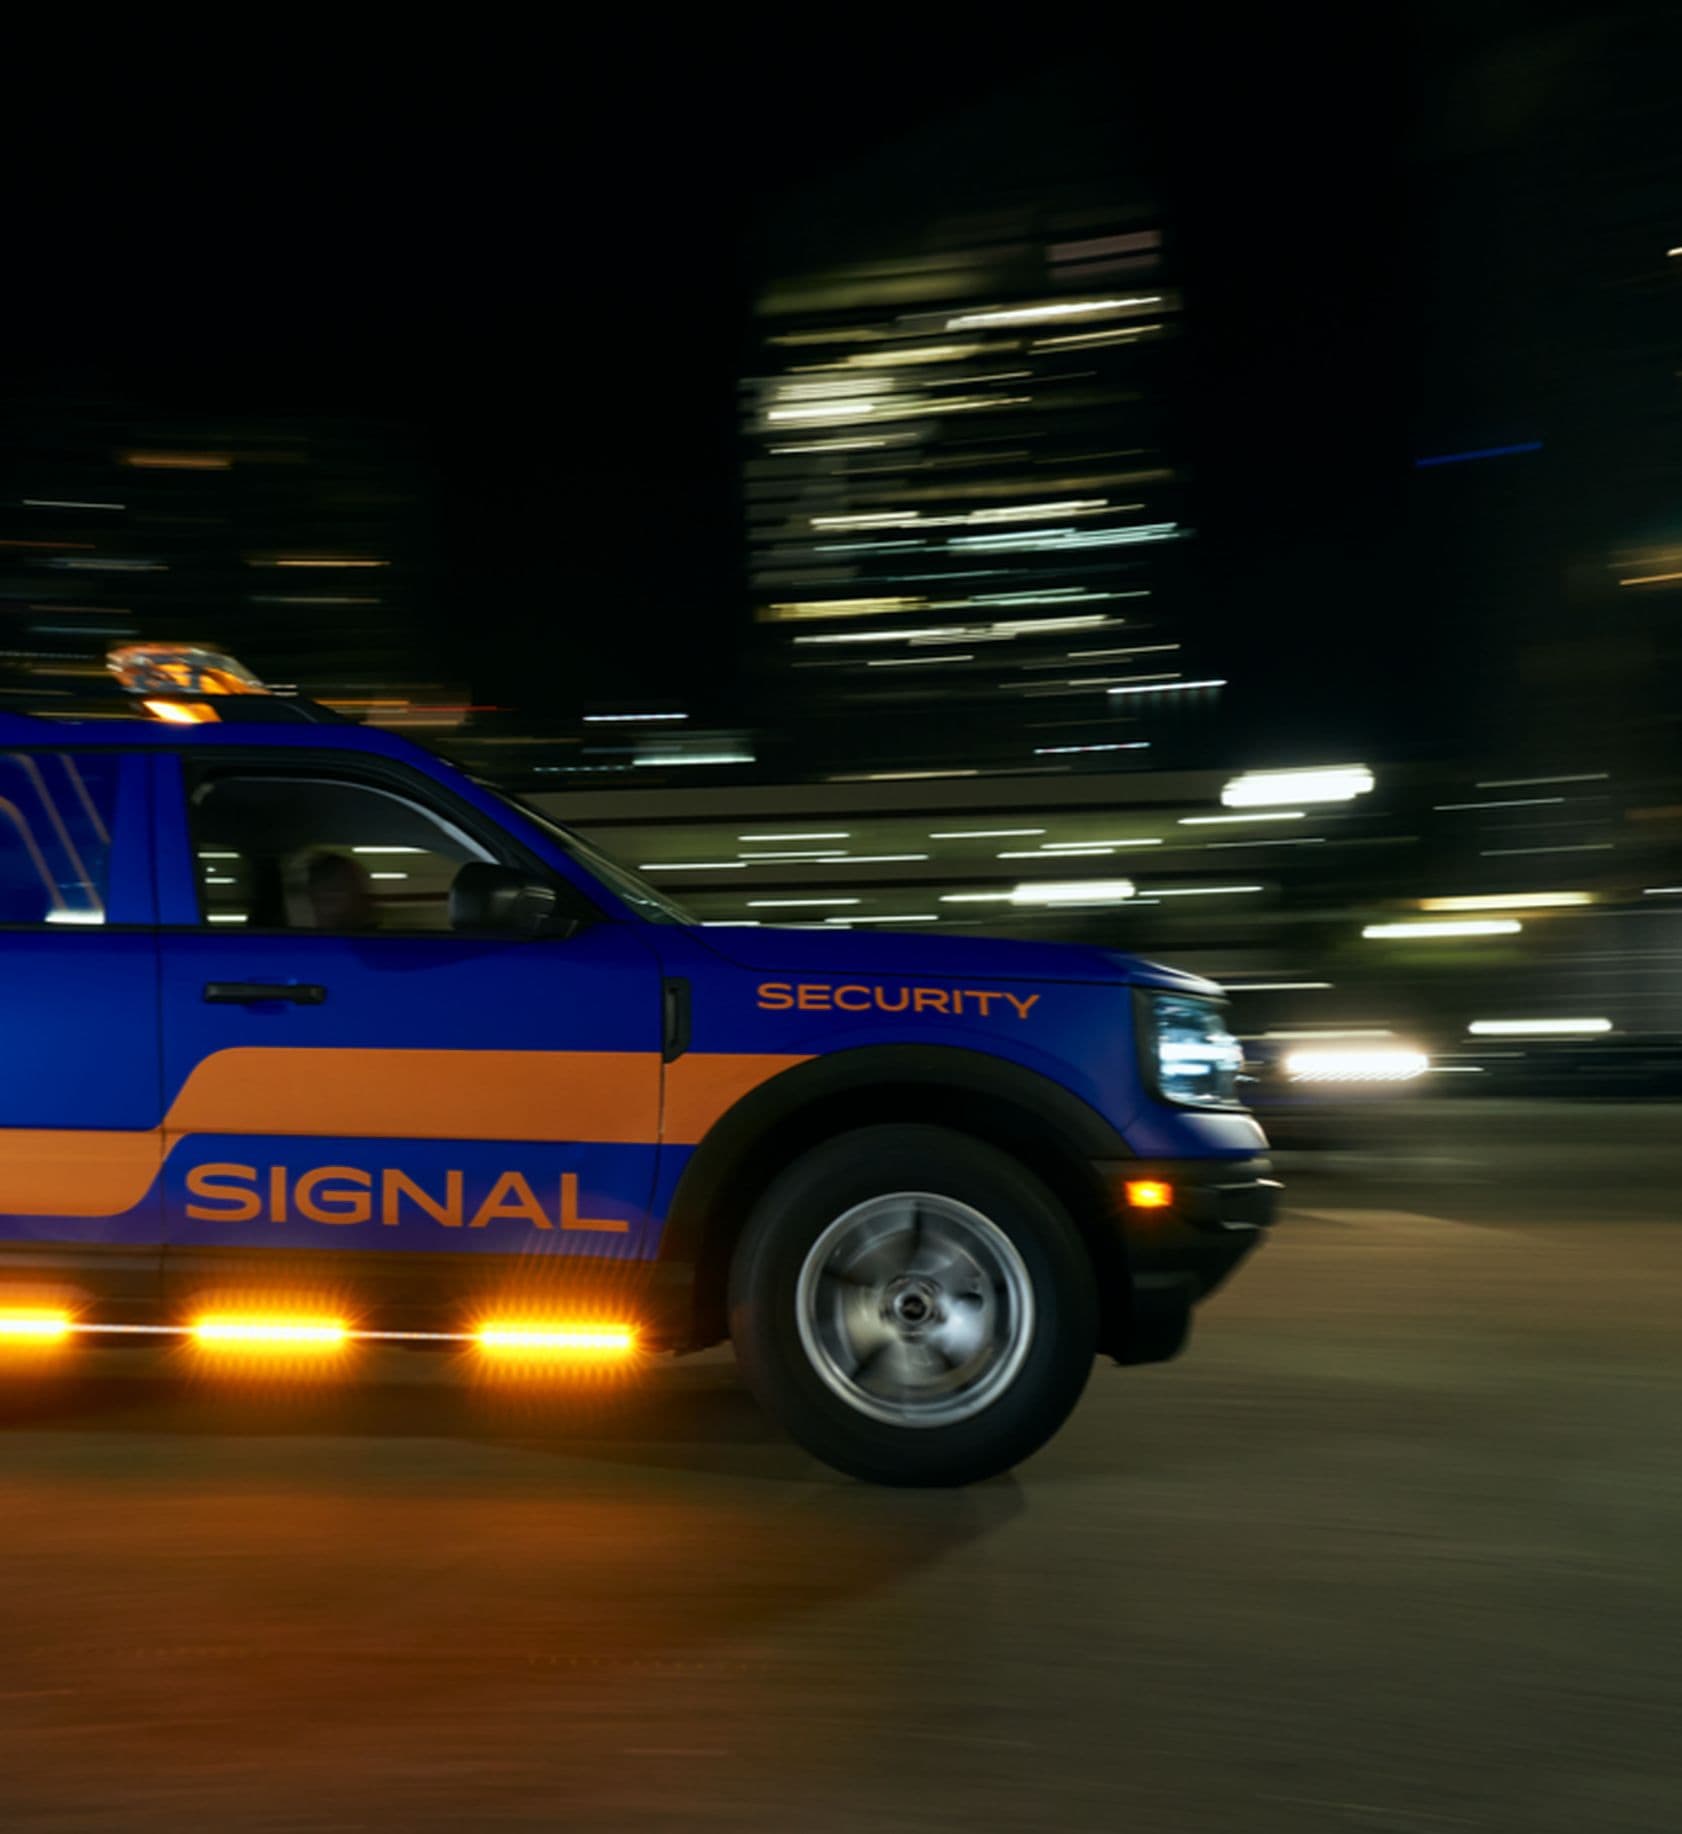 Signal company vehicle driving at night